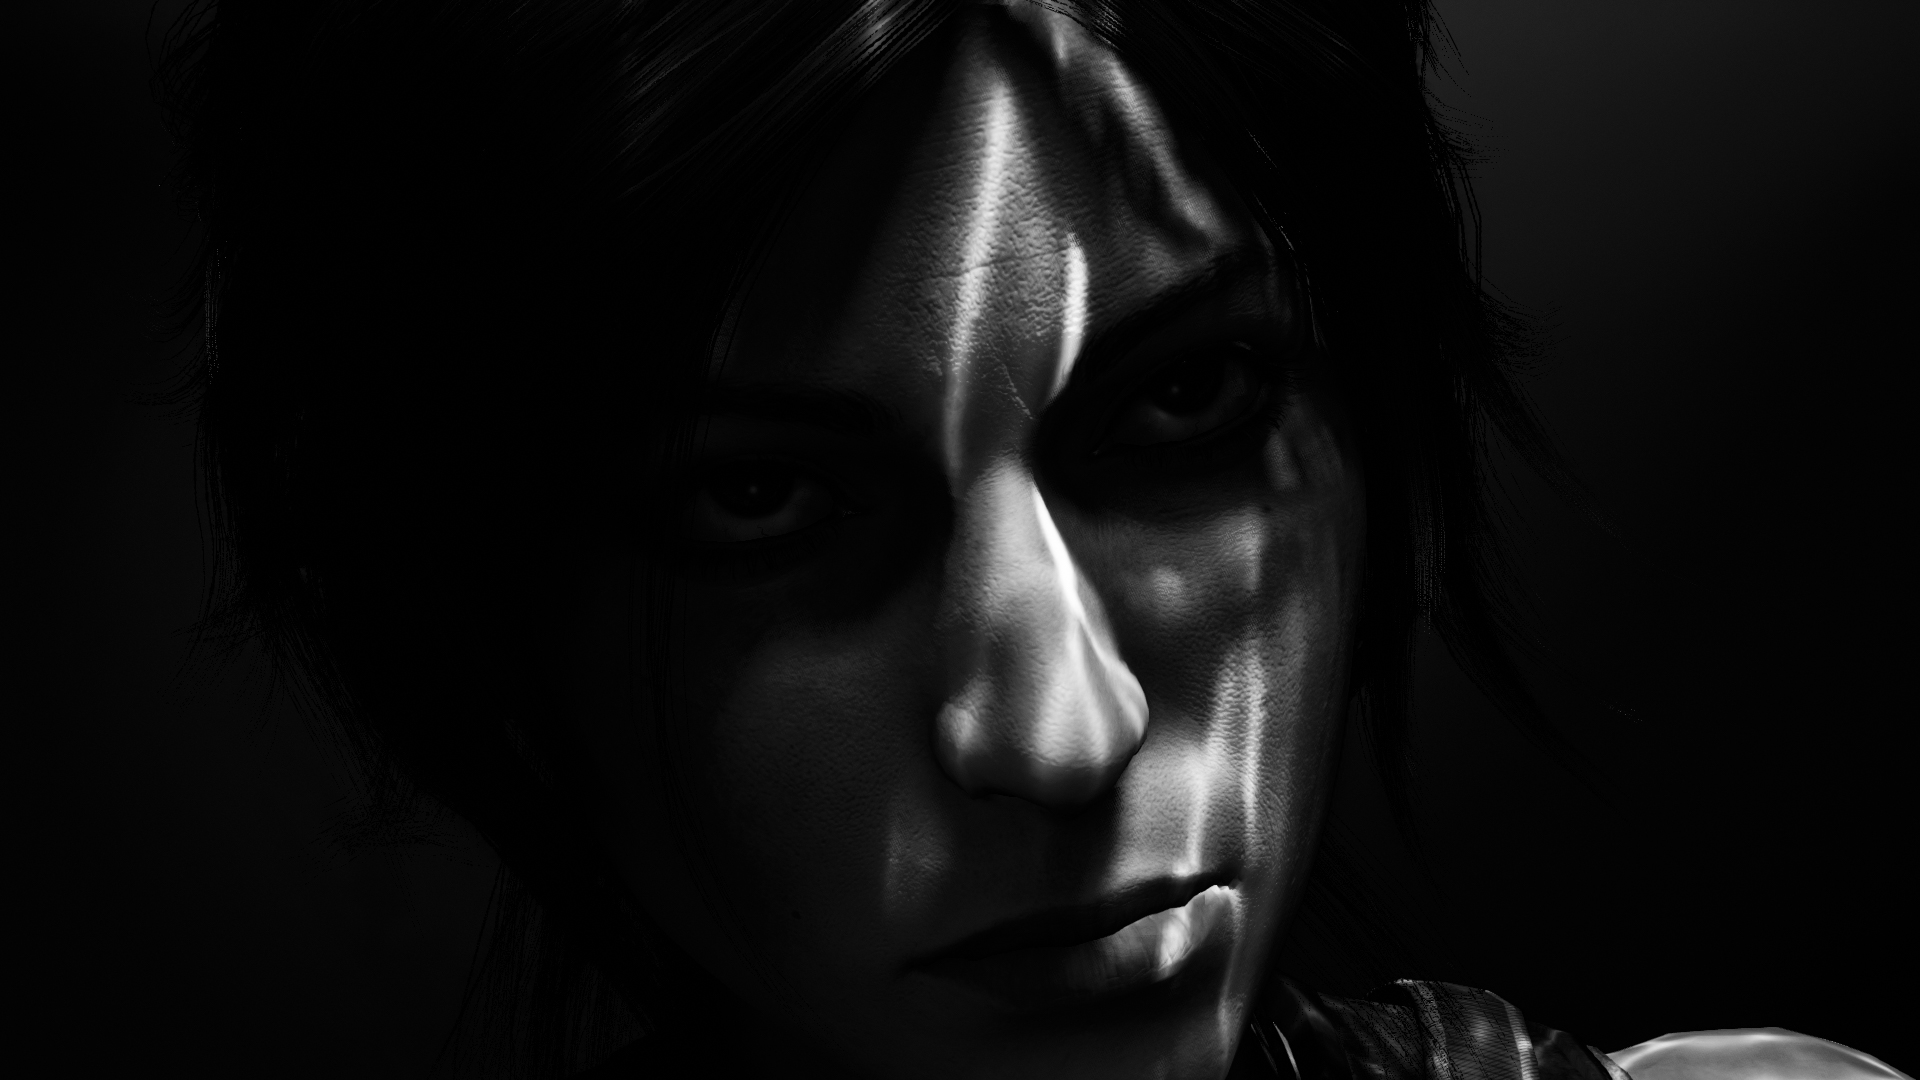 General 1920x1080 screen shot PC gaming Shadow of the Tomb Raider video game characters Nvidia Ansel Lara Croft (Tomb Raider) dark face closeup